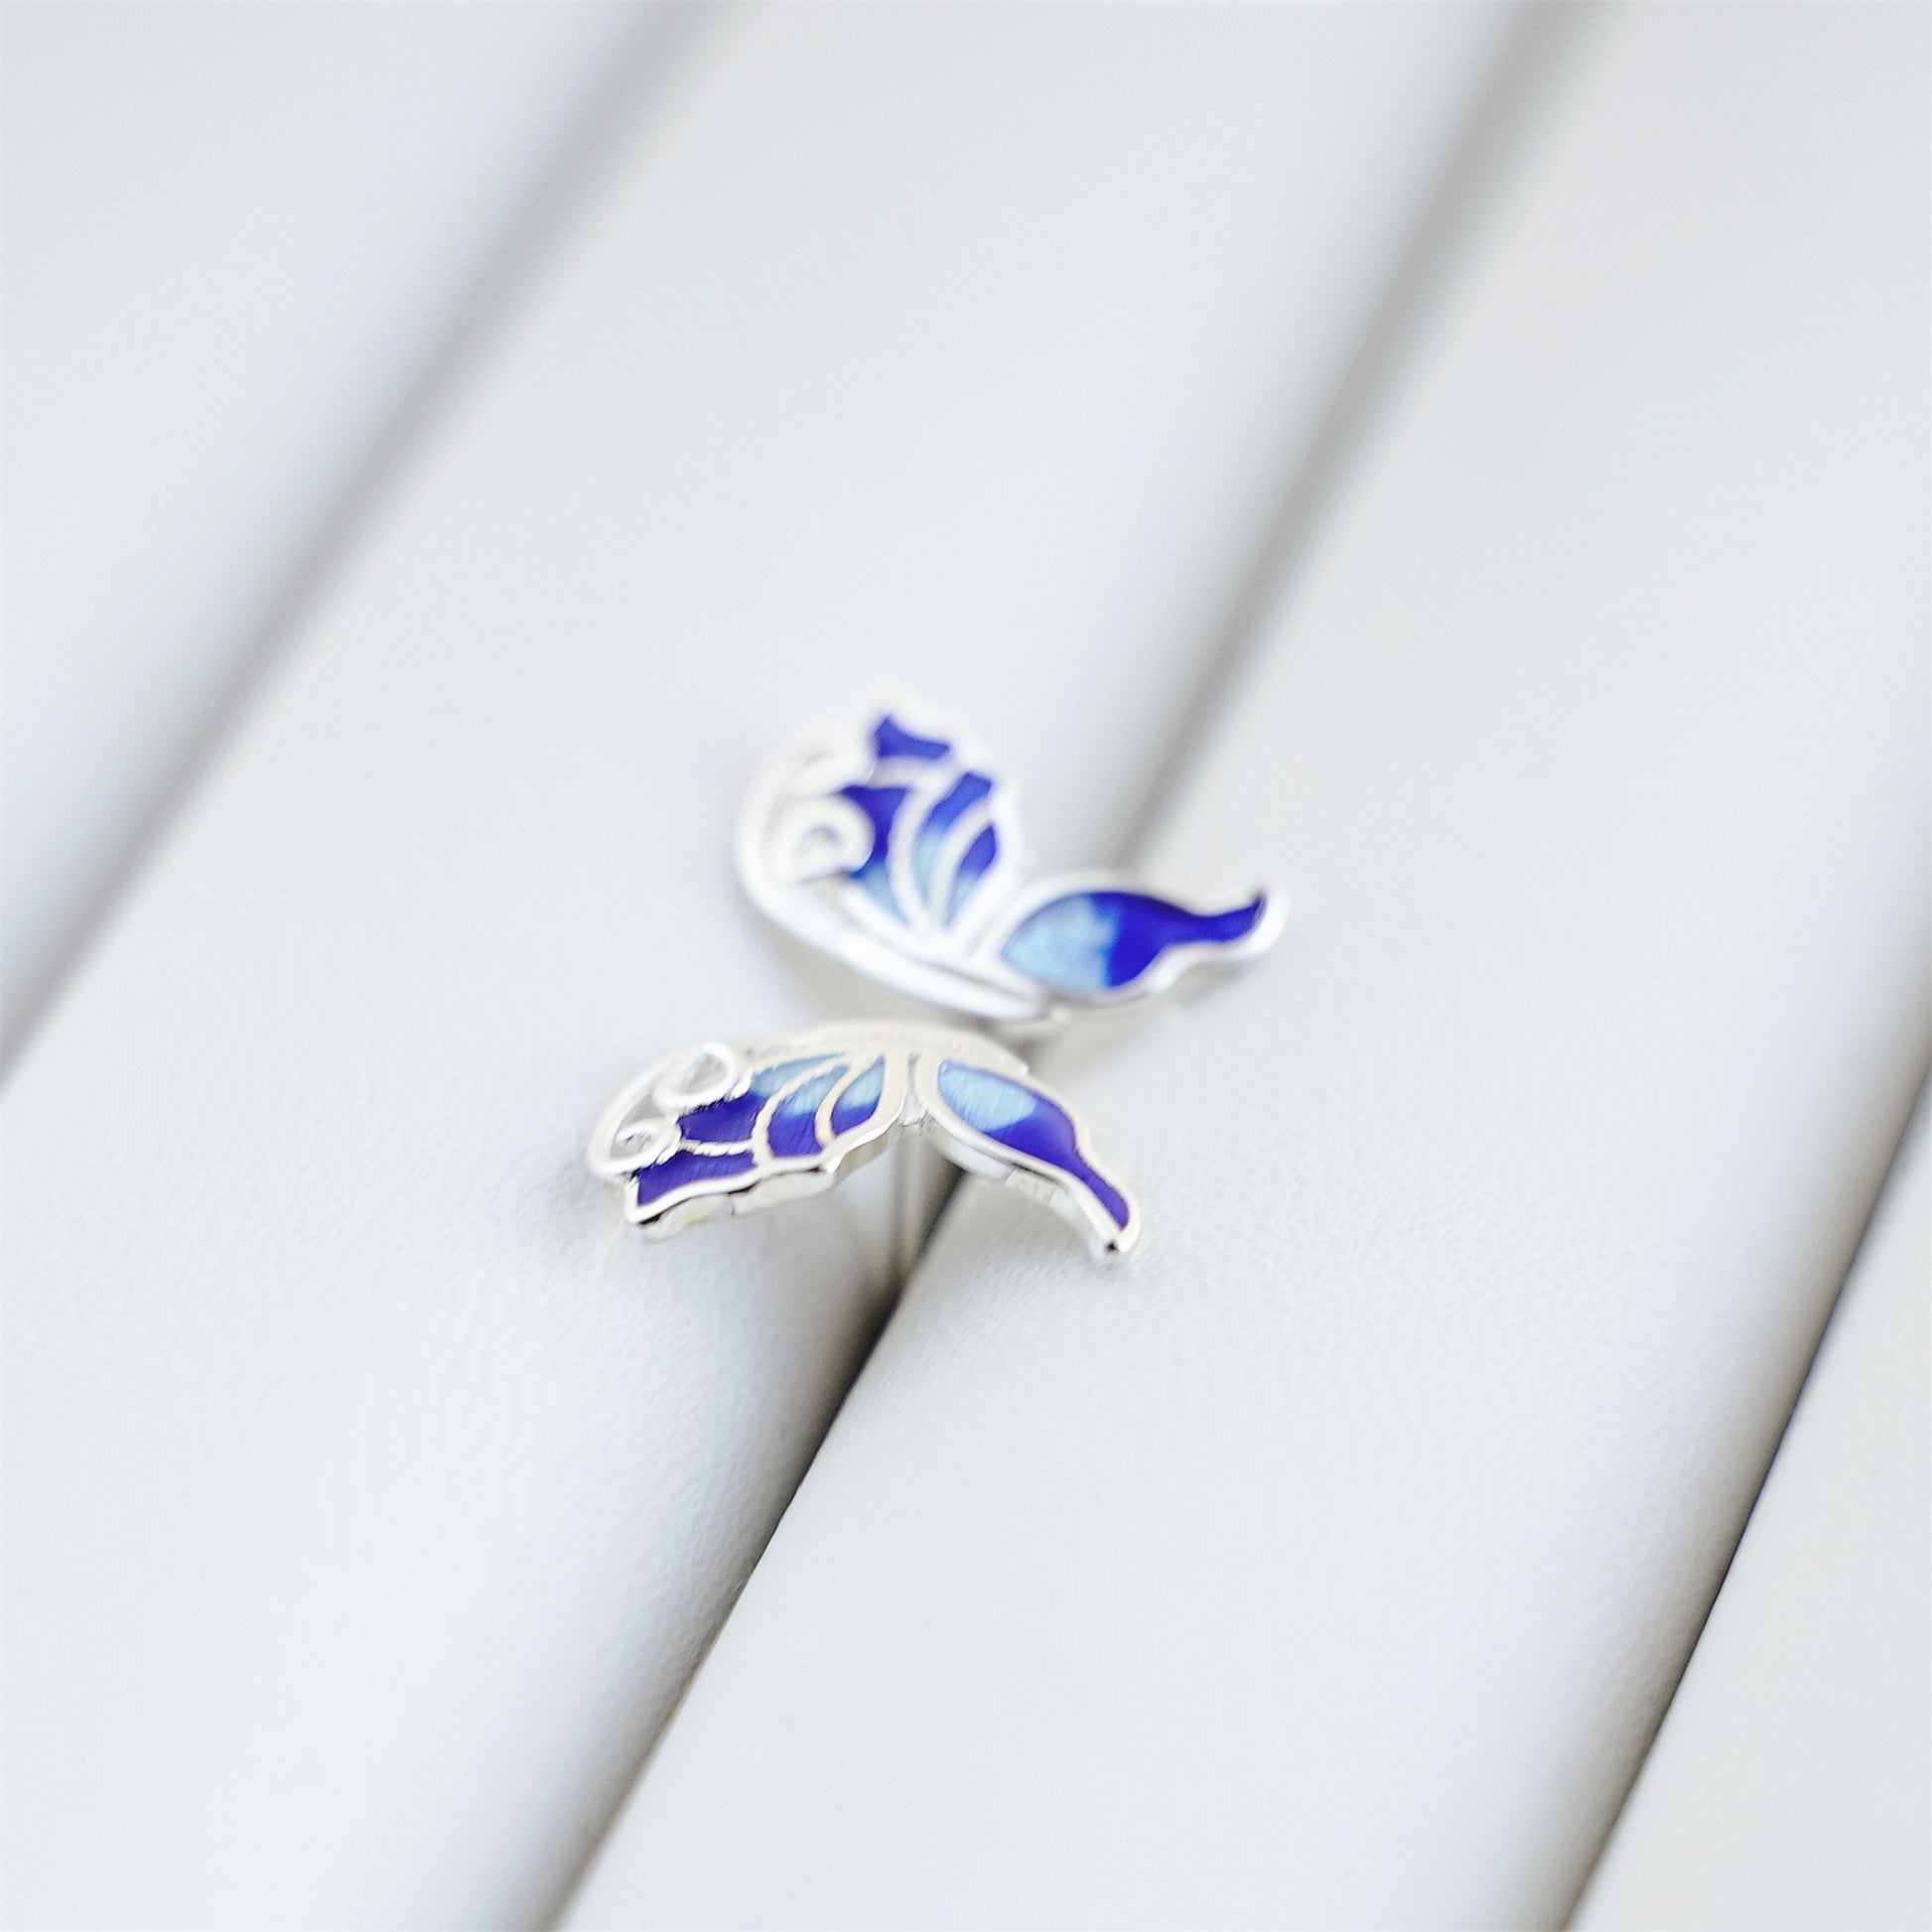 925 Sterling Silver Butterfly Wing Earrings with Blue Enamel for Butterfly lovers - sugarkittenlondon